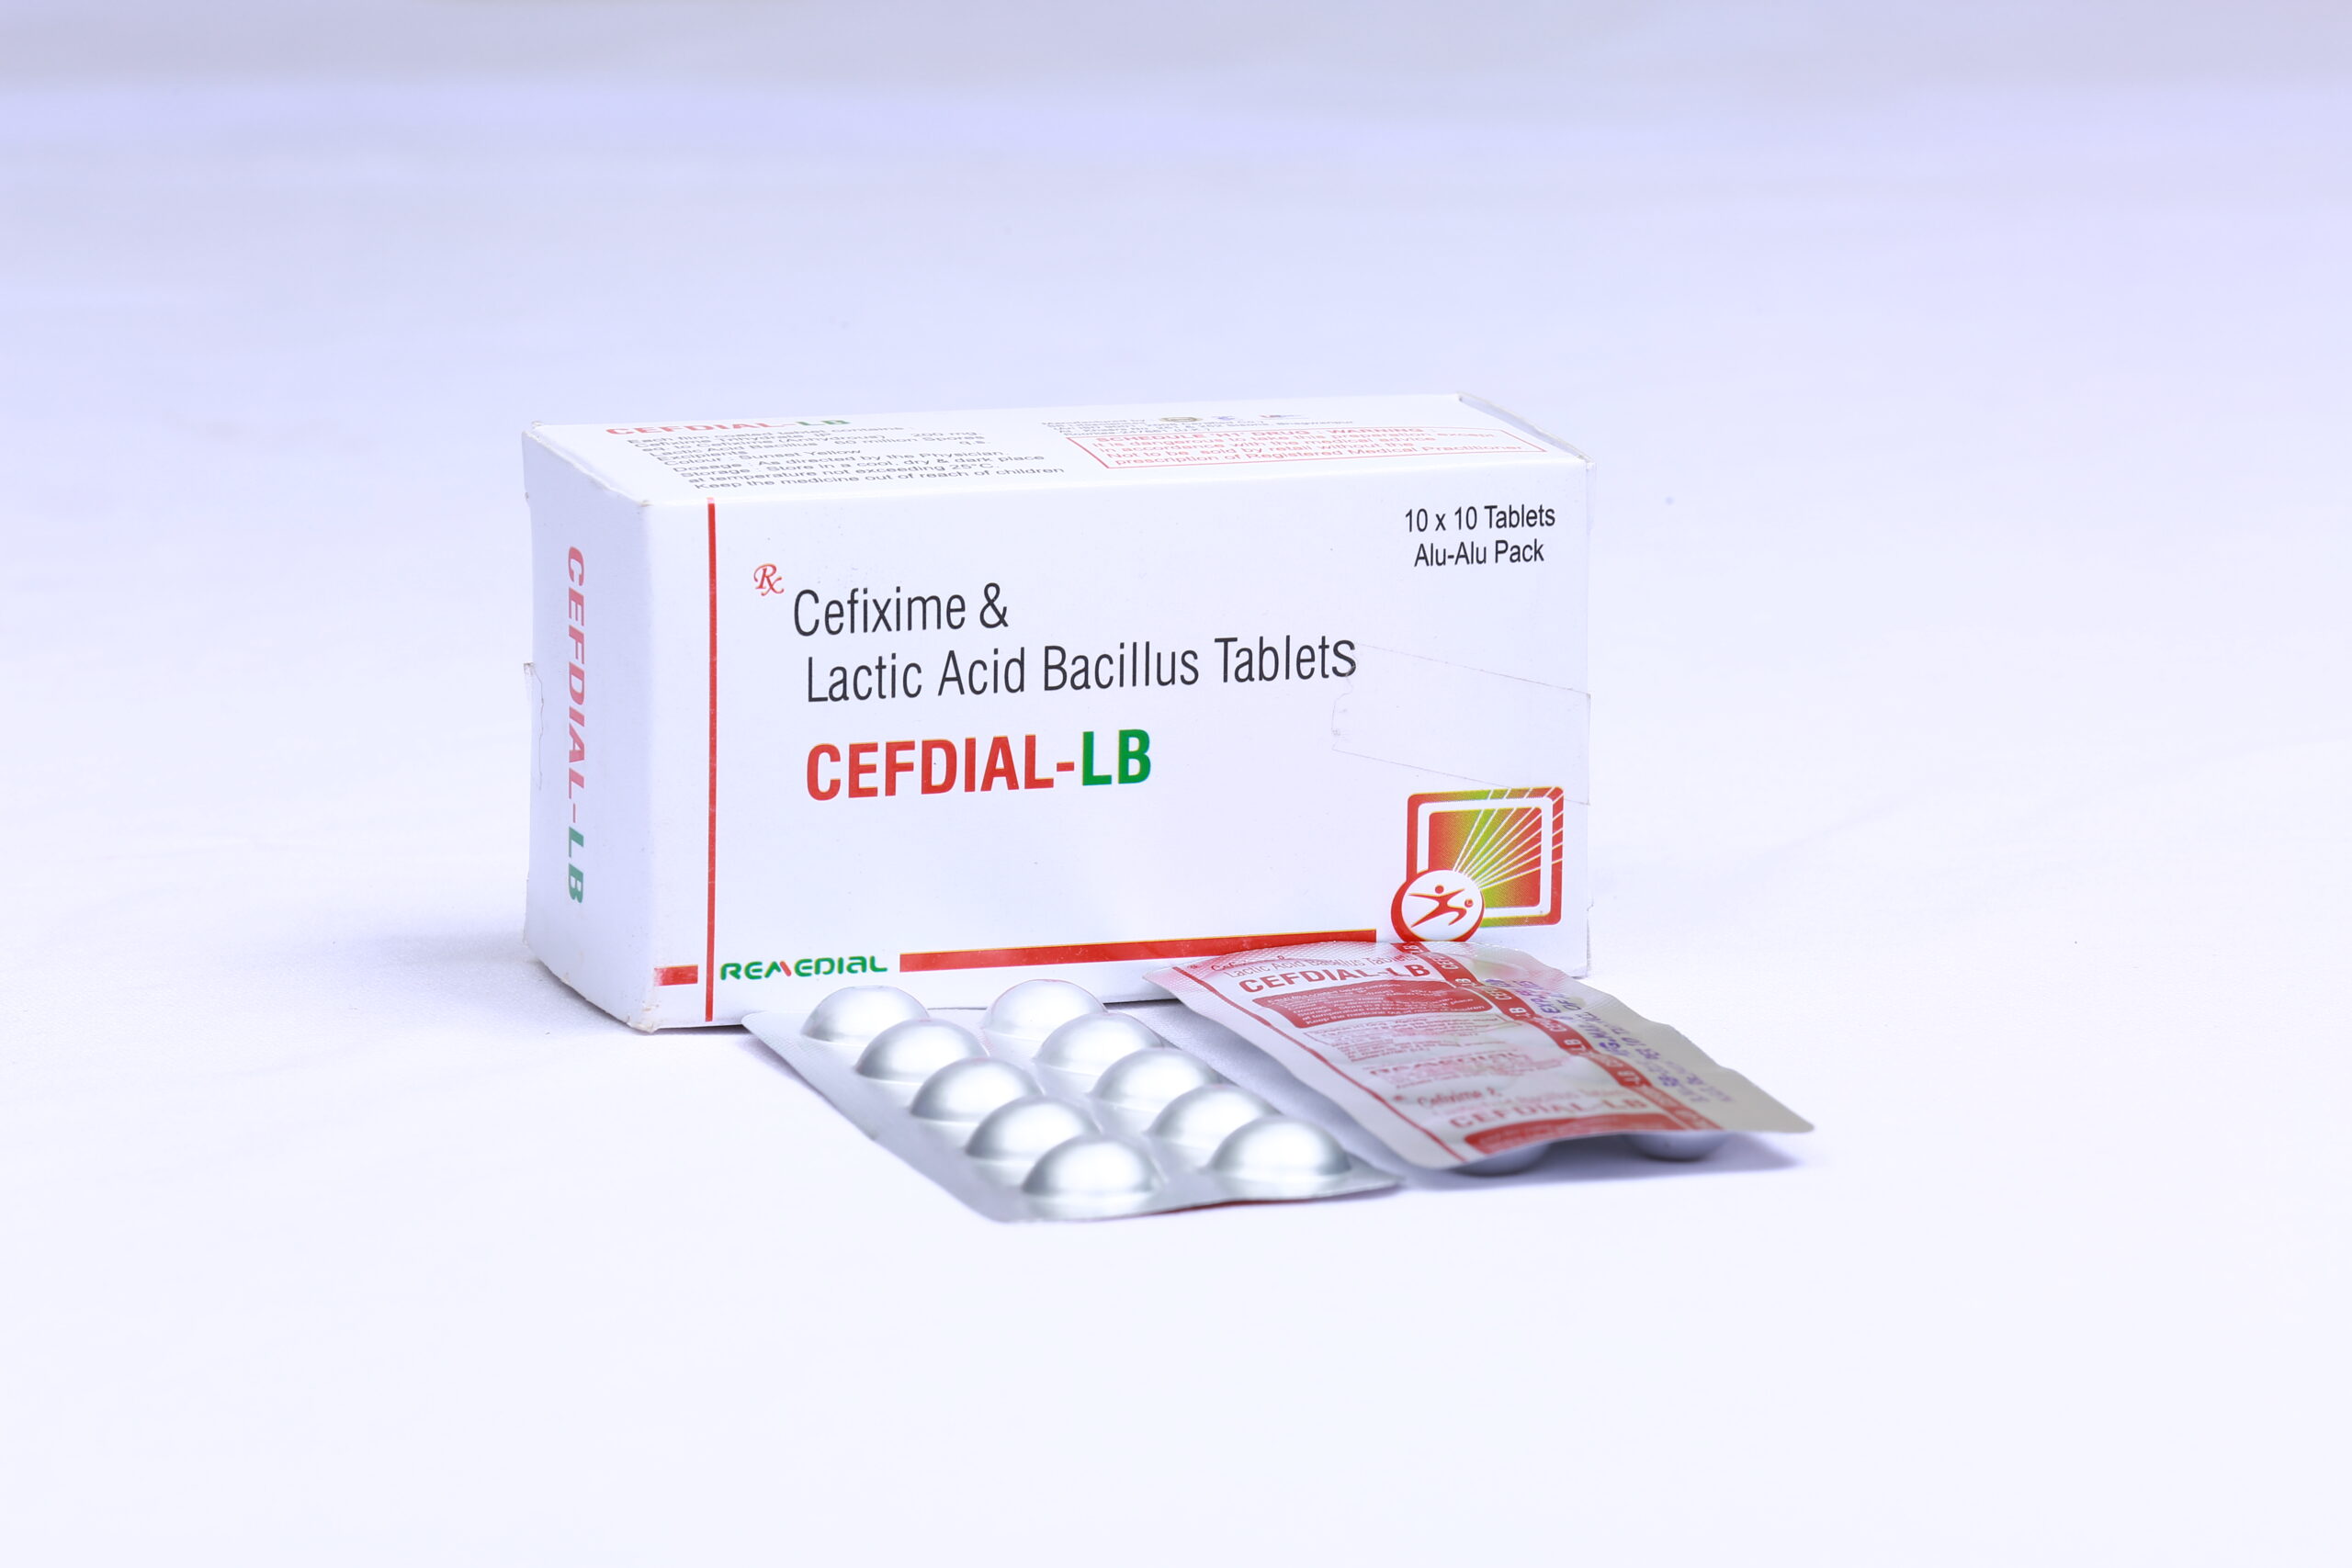 CEFDIAL-LB (Cefixime 200mg + Lactic Acid Bacillus)